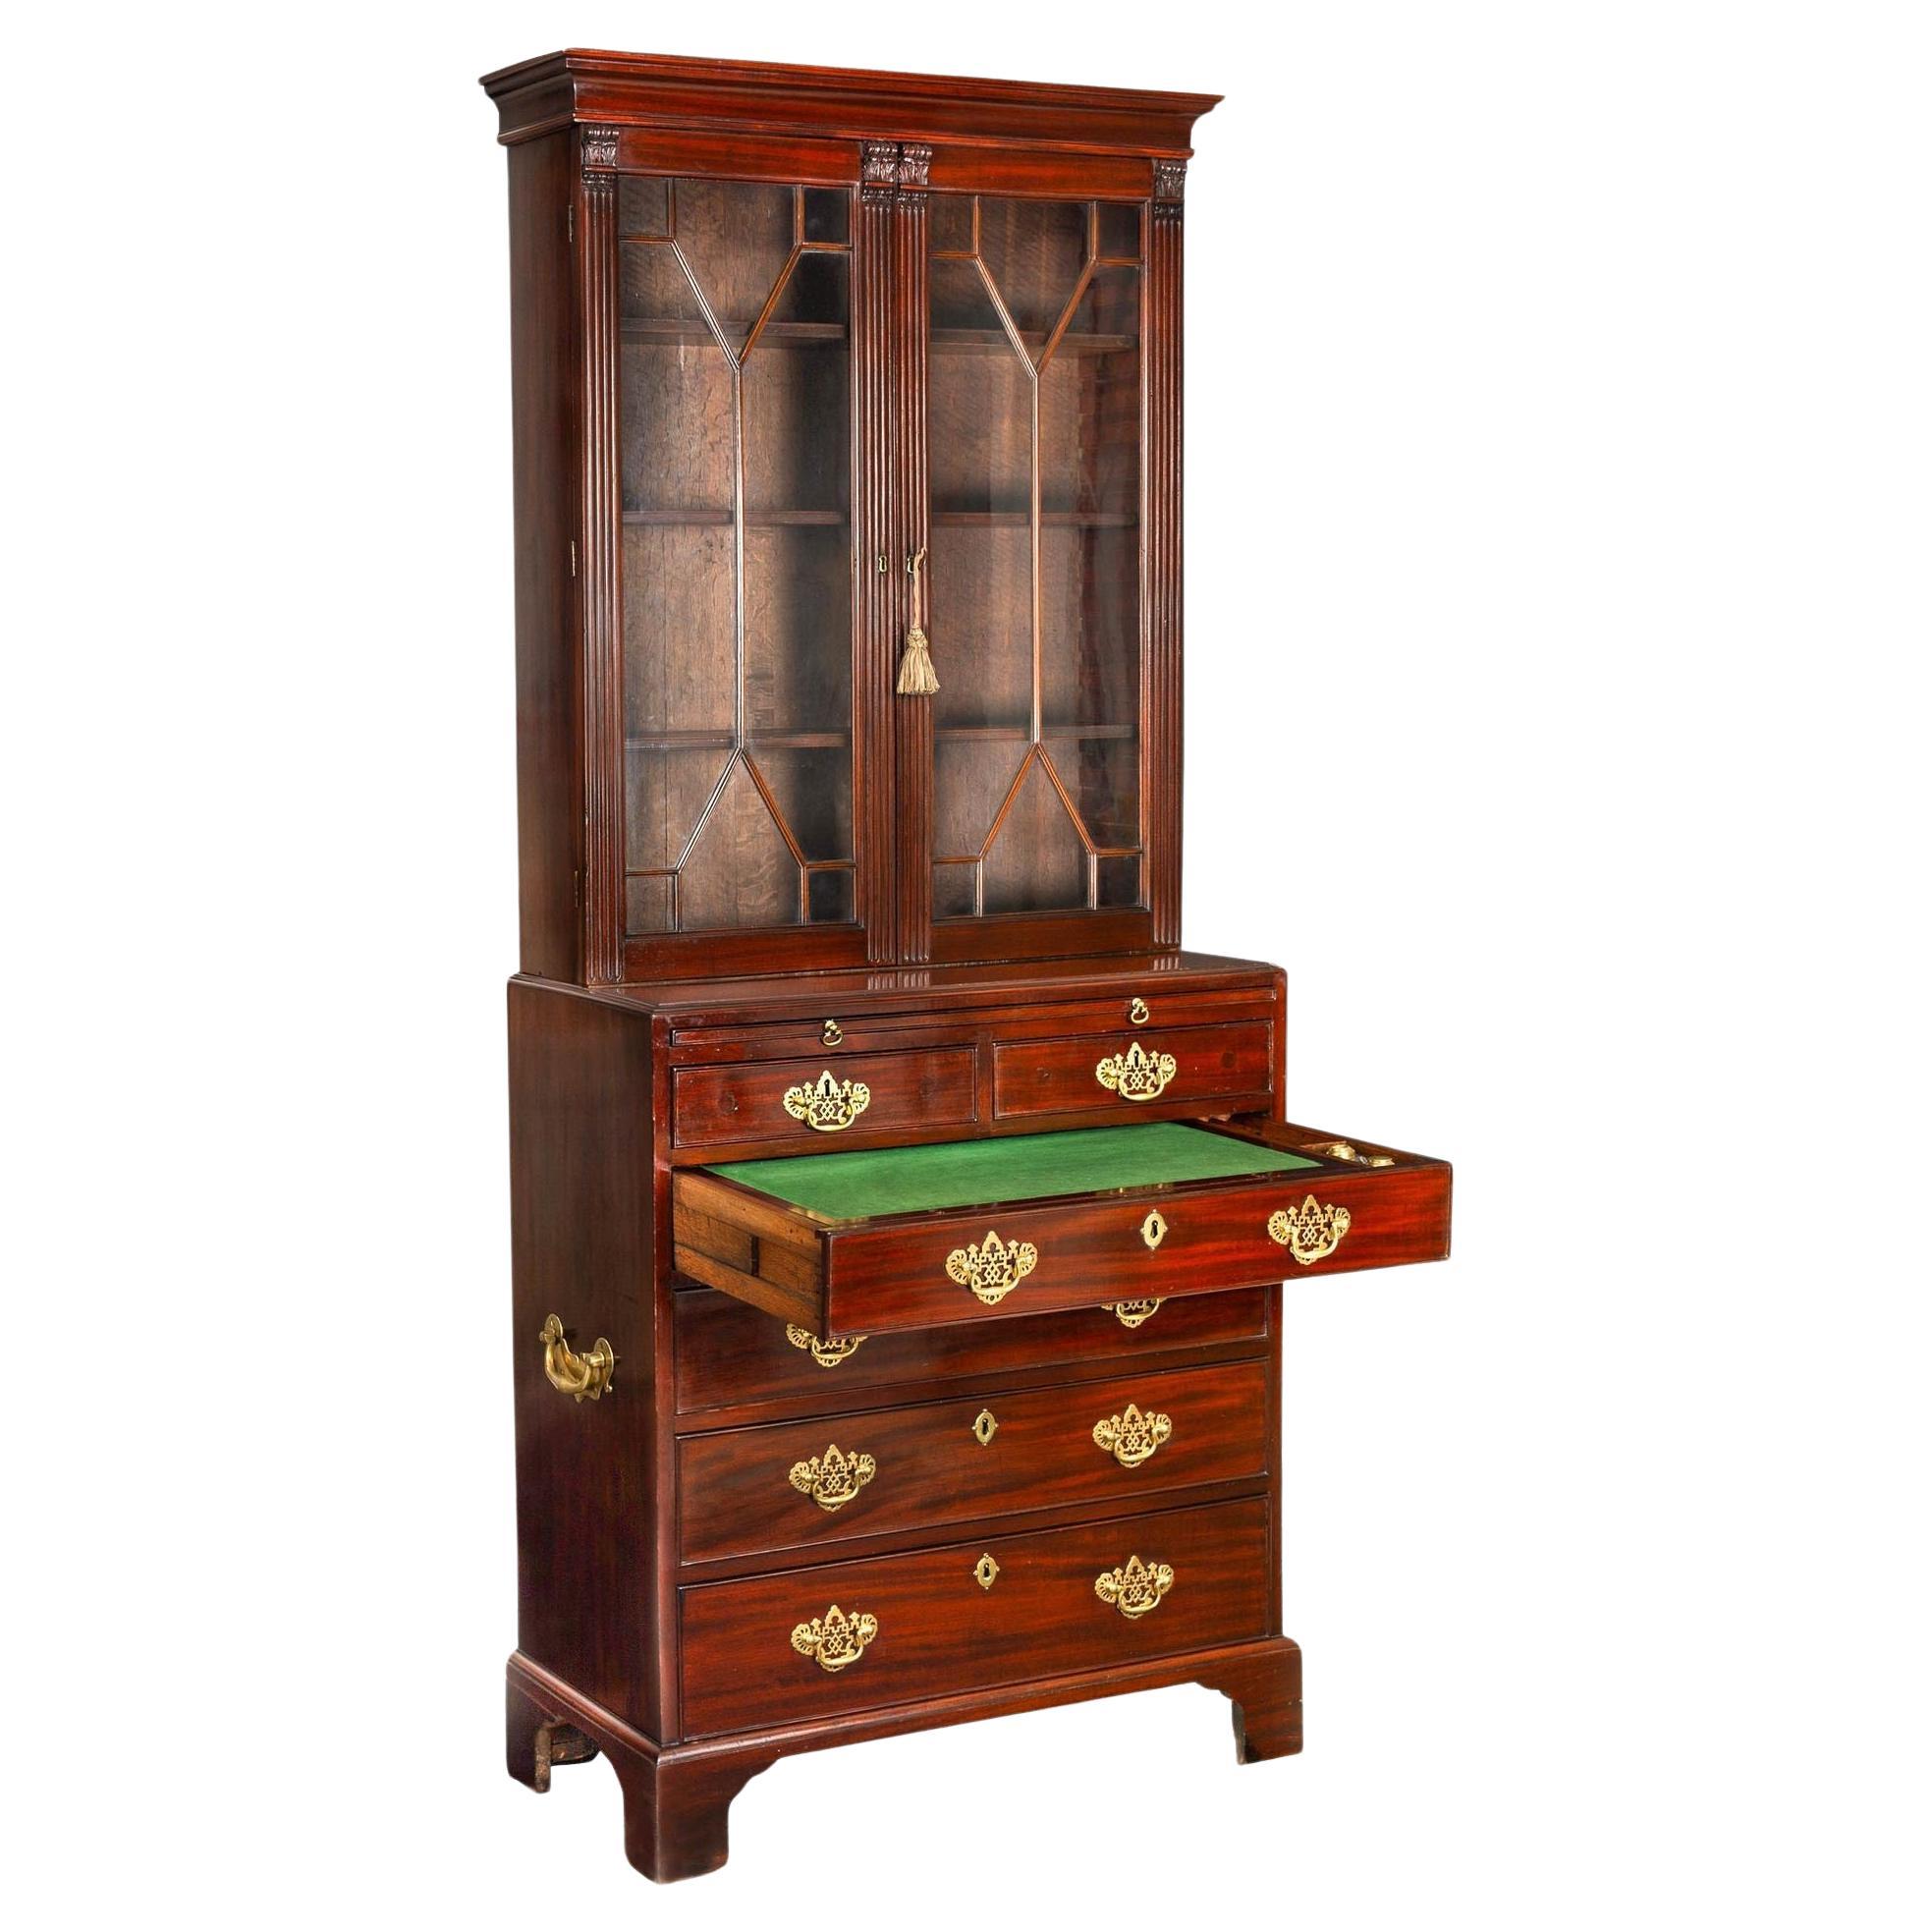 George III English Antique Mahogany Bookcase Secretary Desk circa 1780 For Sale